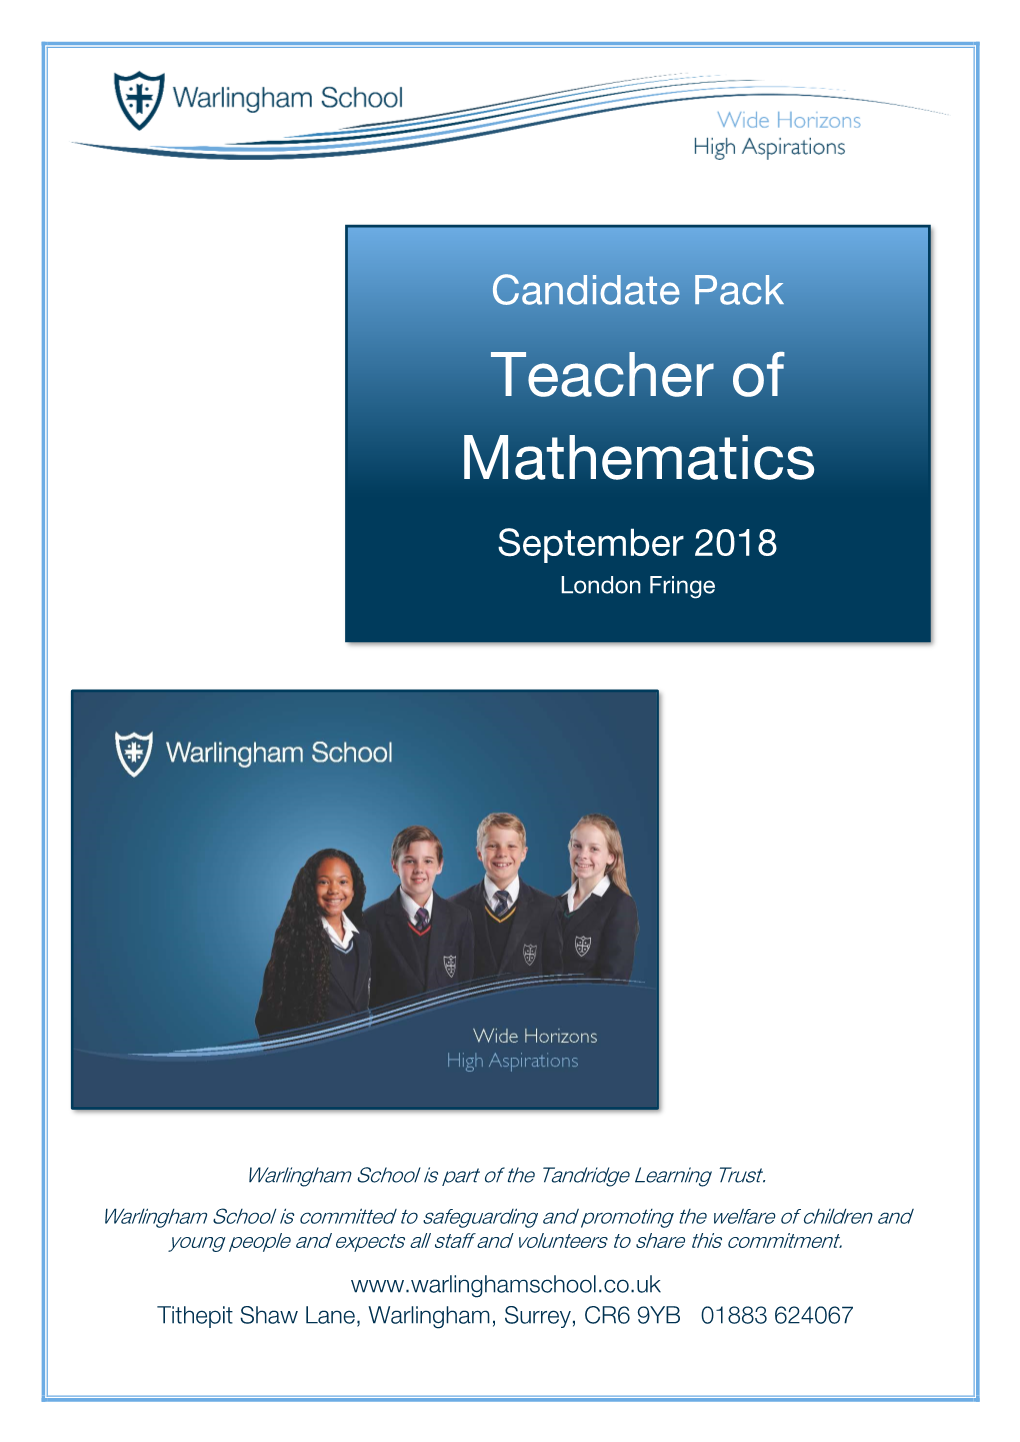 Teacher of Mathematics September 2018 London Fringe